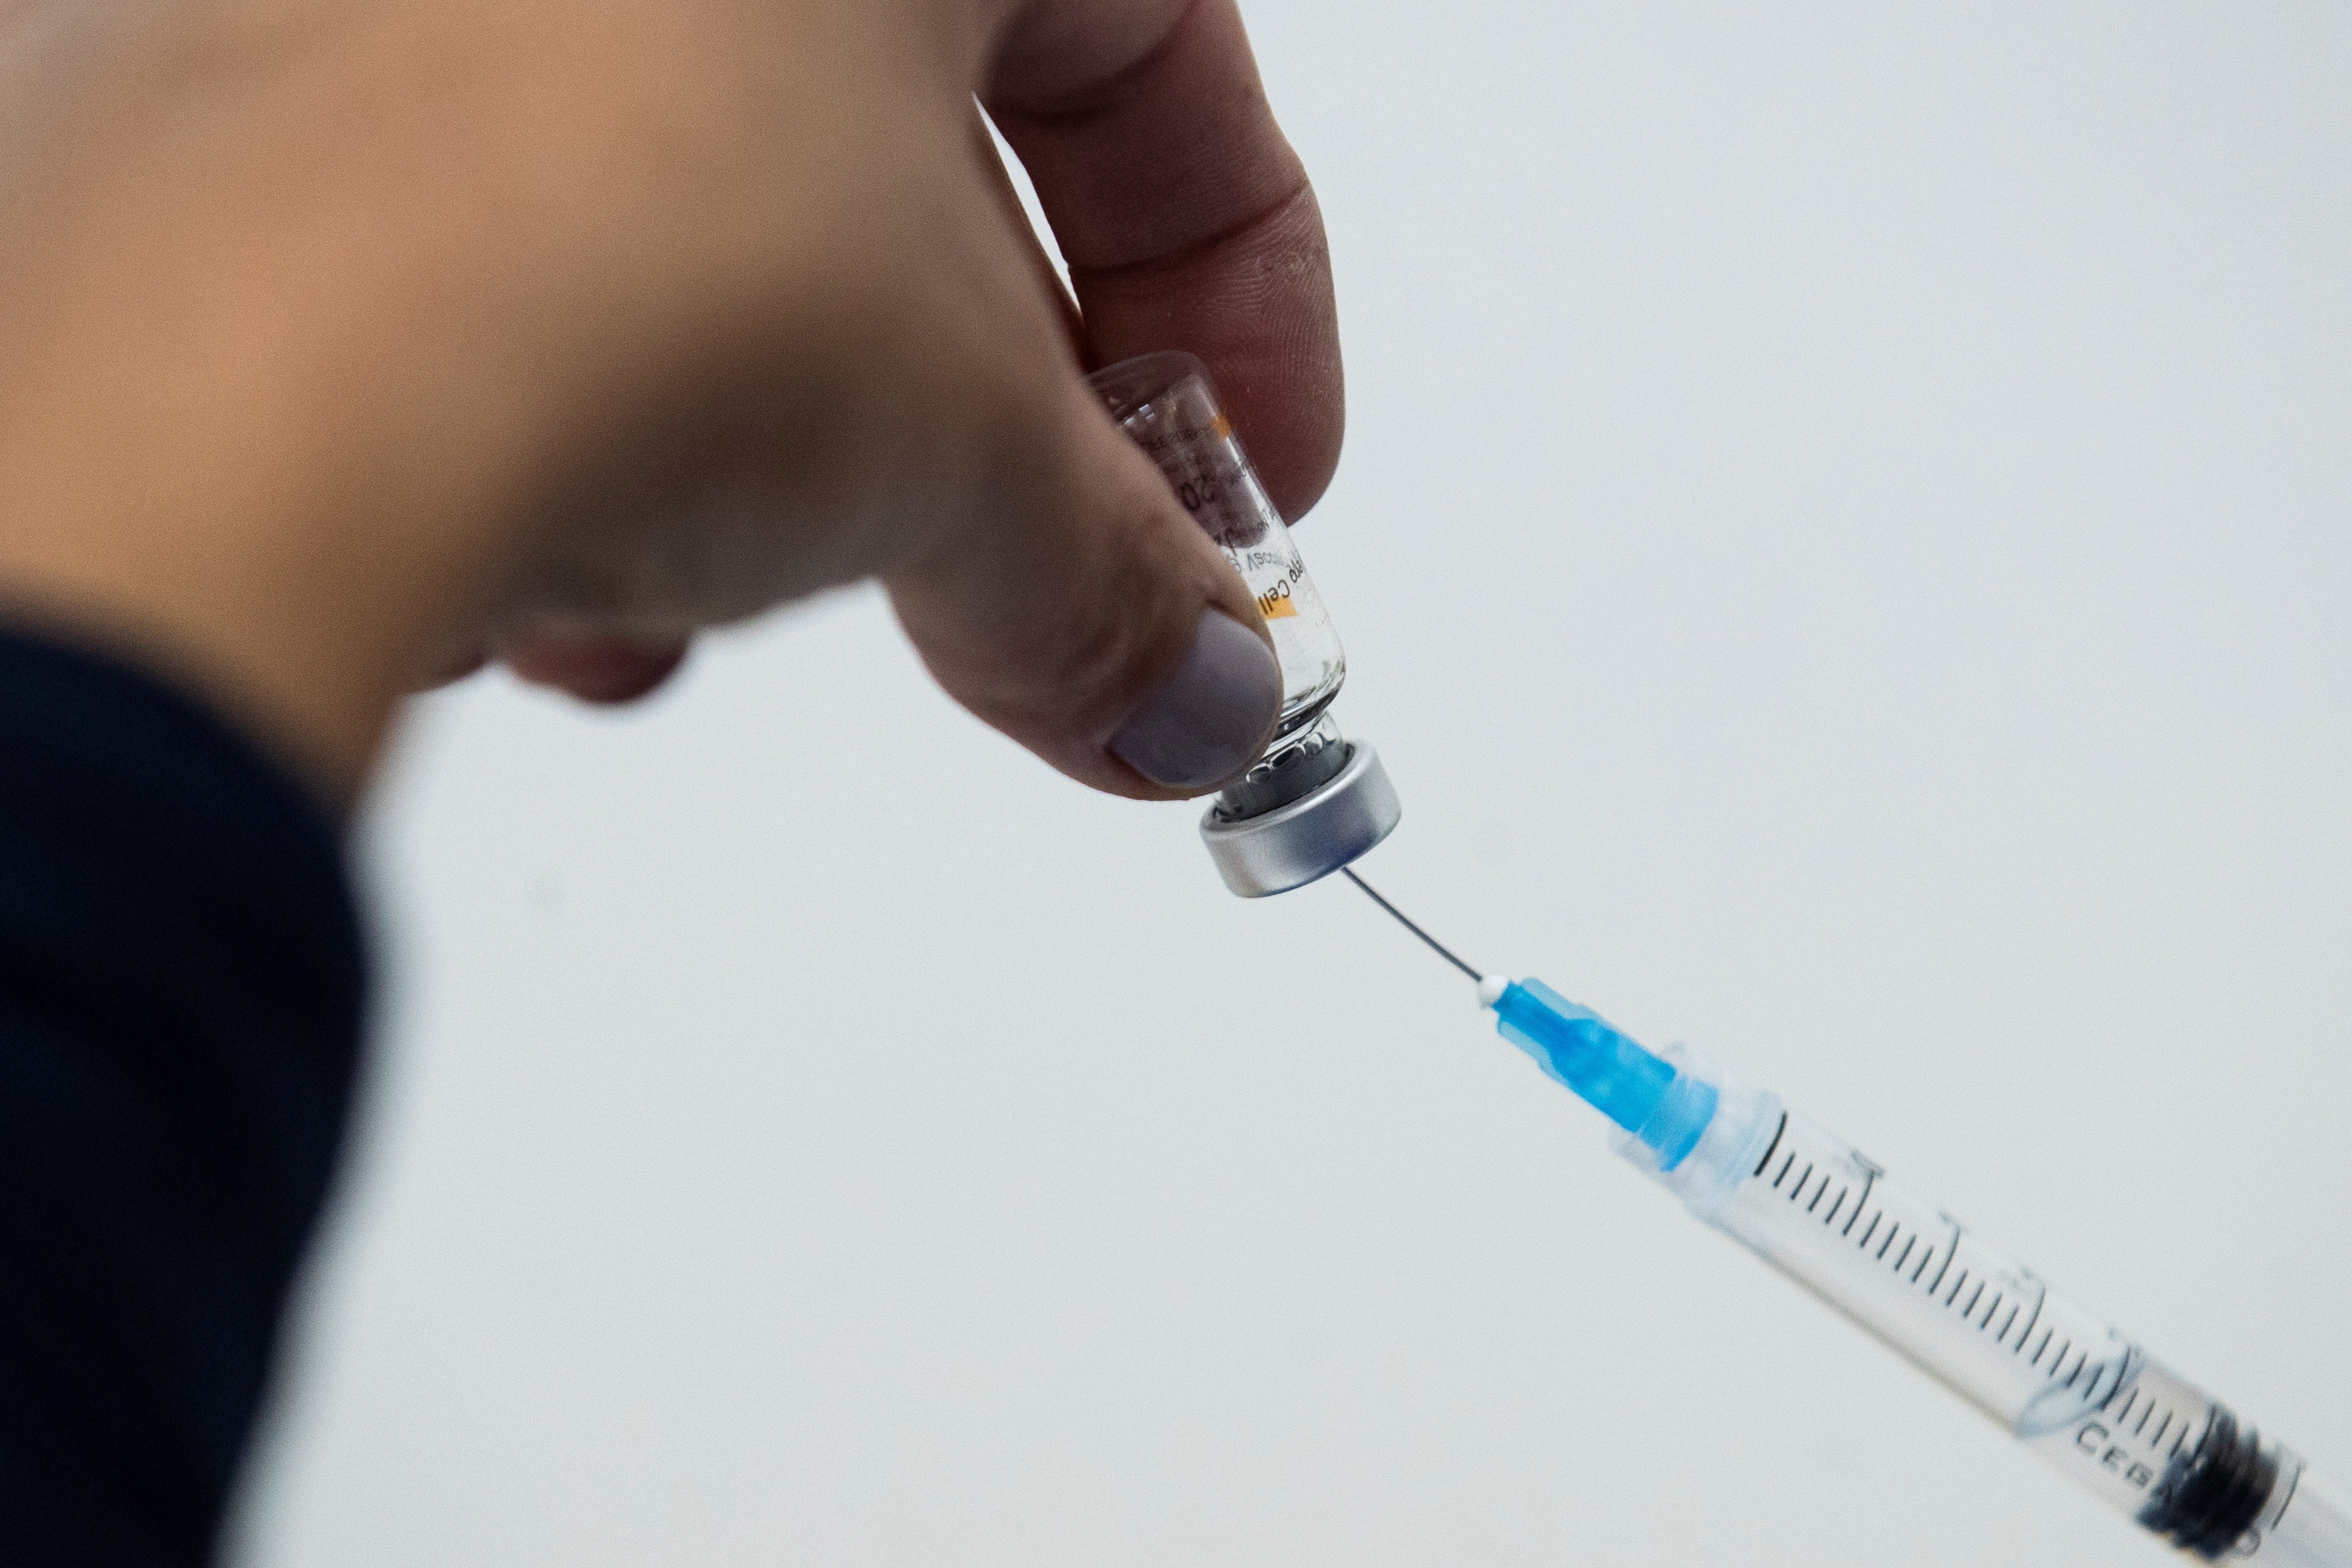 Astúries: tiren gairebé un centenar de vacunes de Pfizer per un error de càlcul